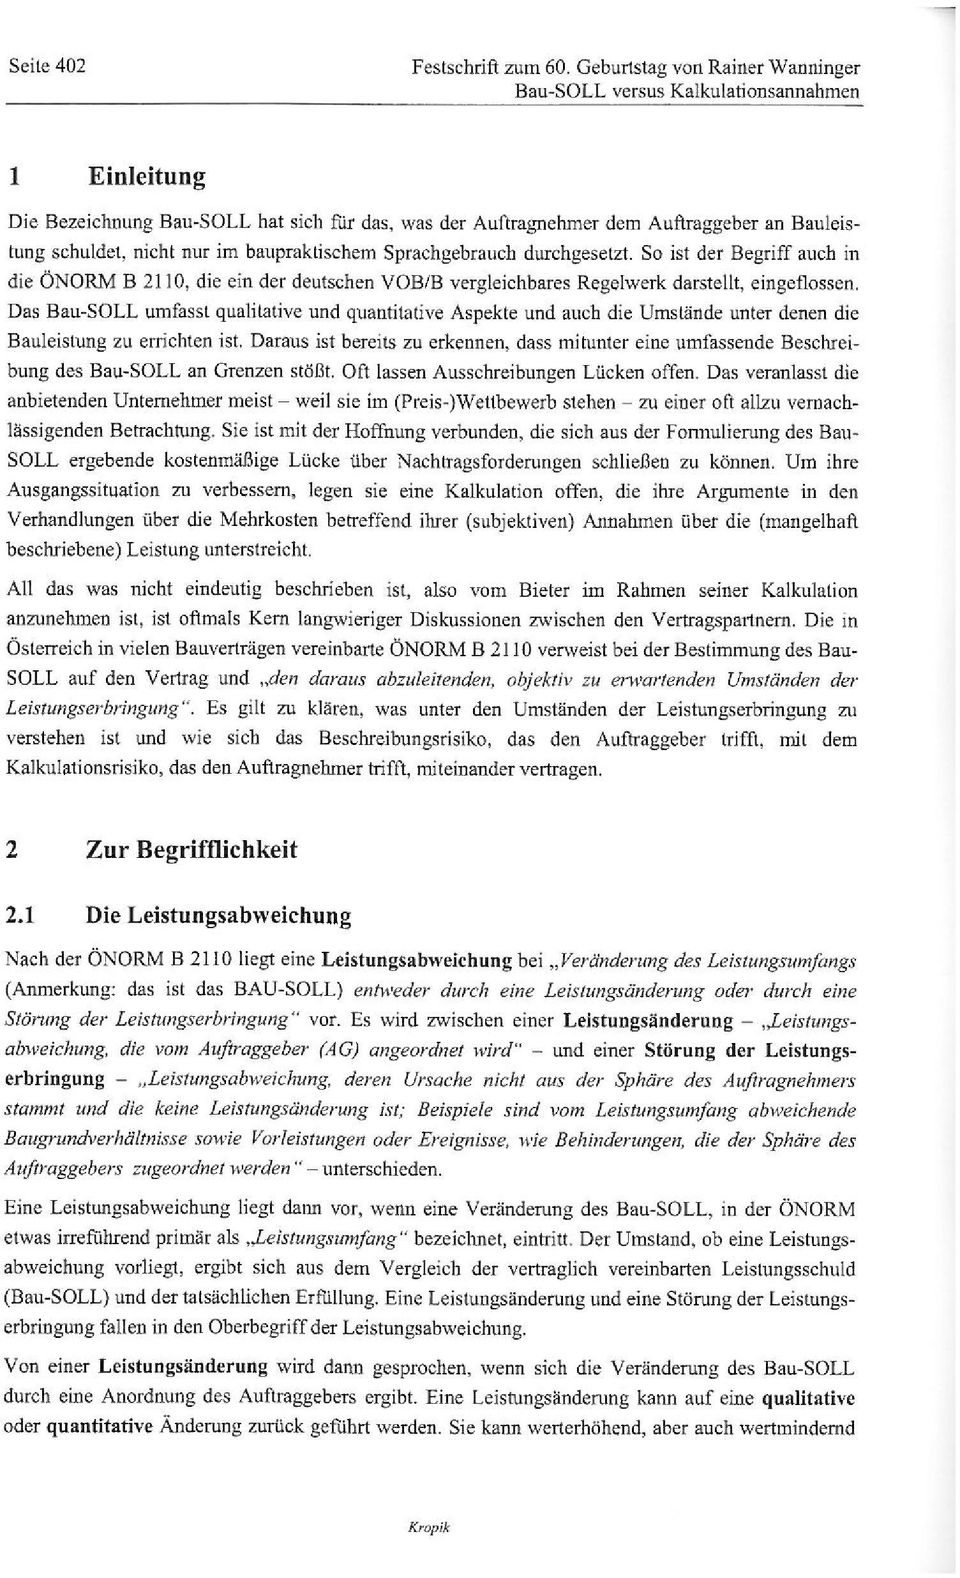 im baupraktischem Sprachgebrauch durchgeselzt. So ist der Begriff auch in die ÖNORM B 2110, die ein der deutschen VOBIB vergleichbares Regelwerk darstellt, eingeflossen.